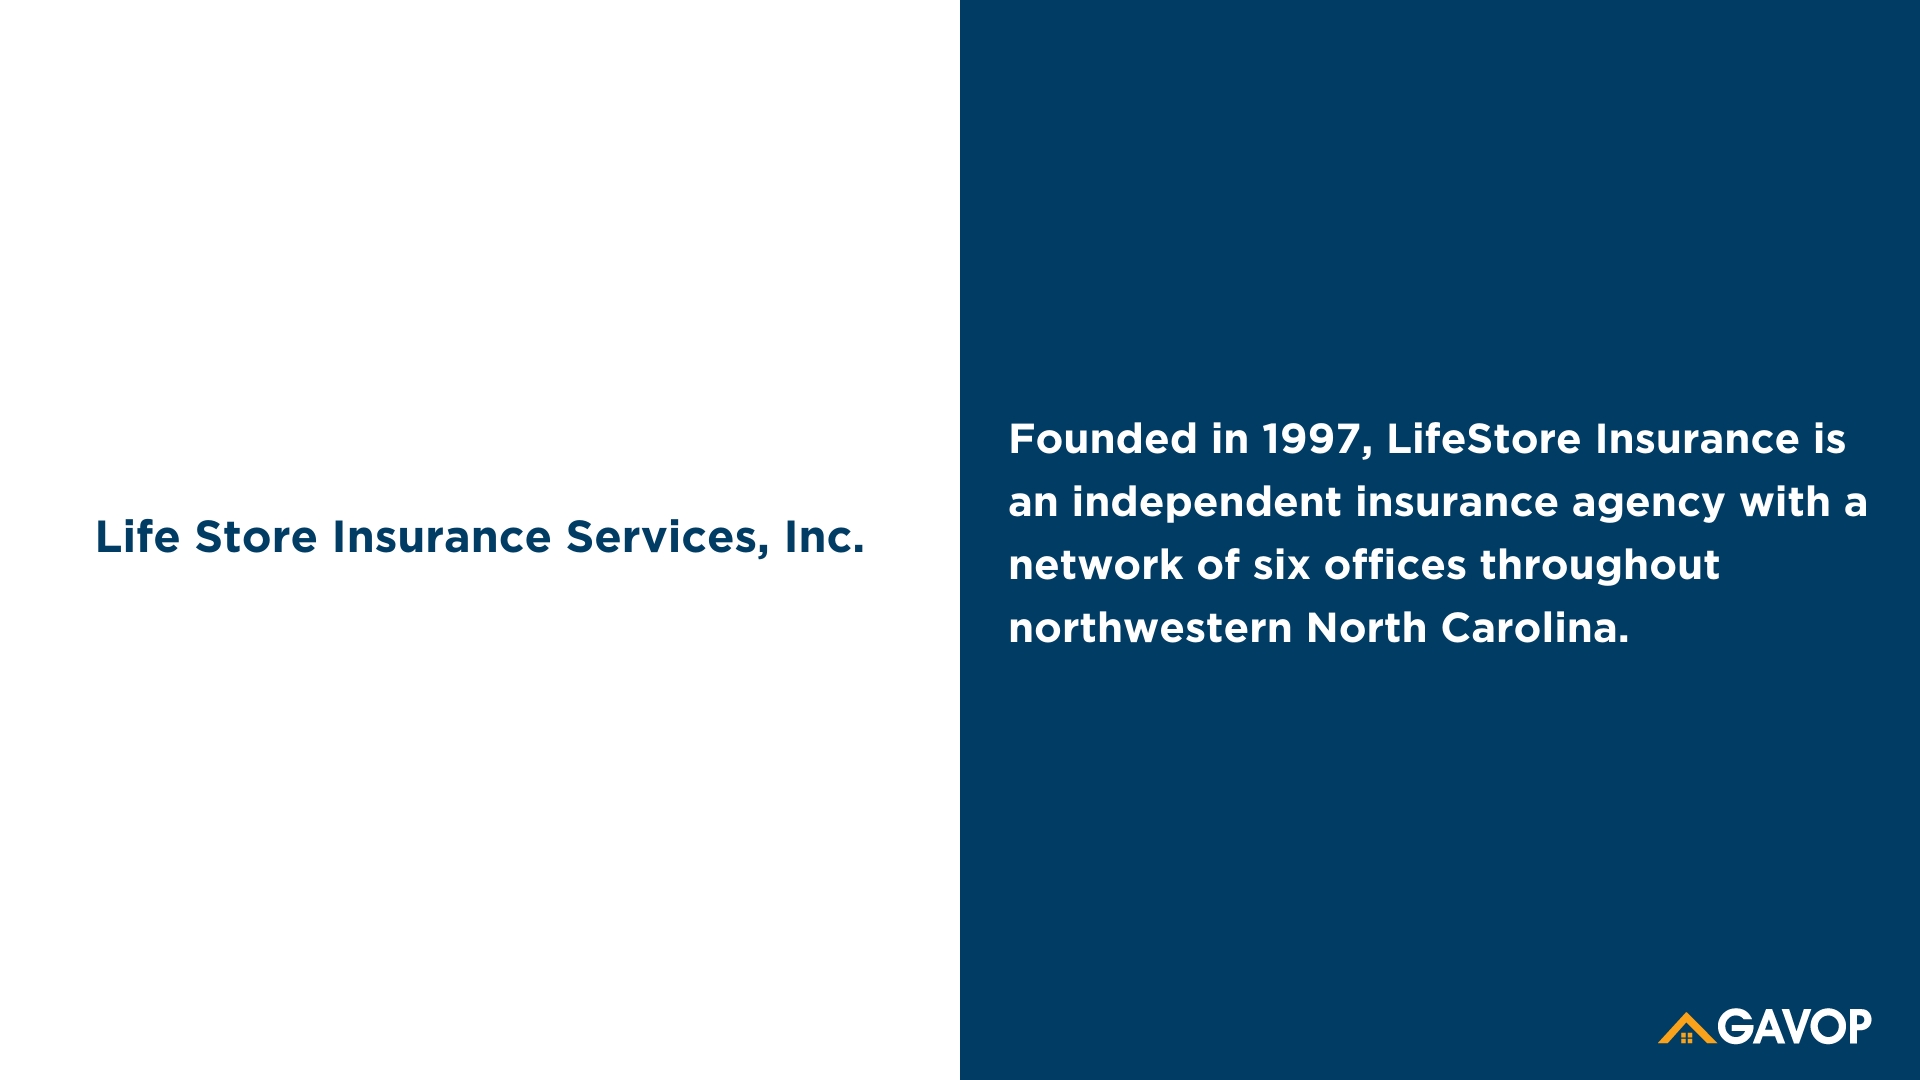 LifeStore Insurance